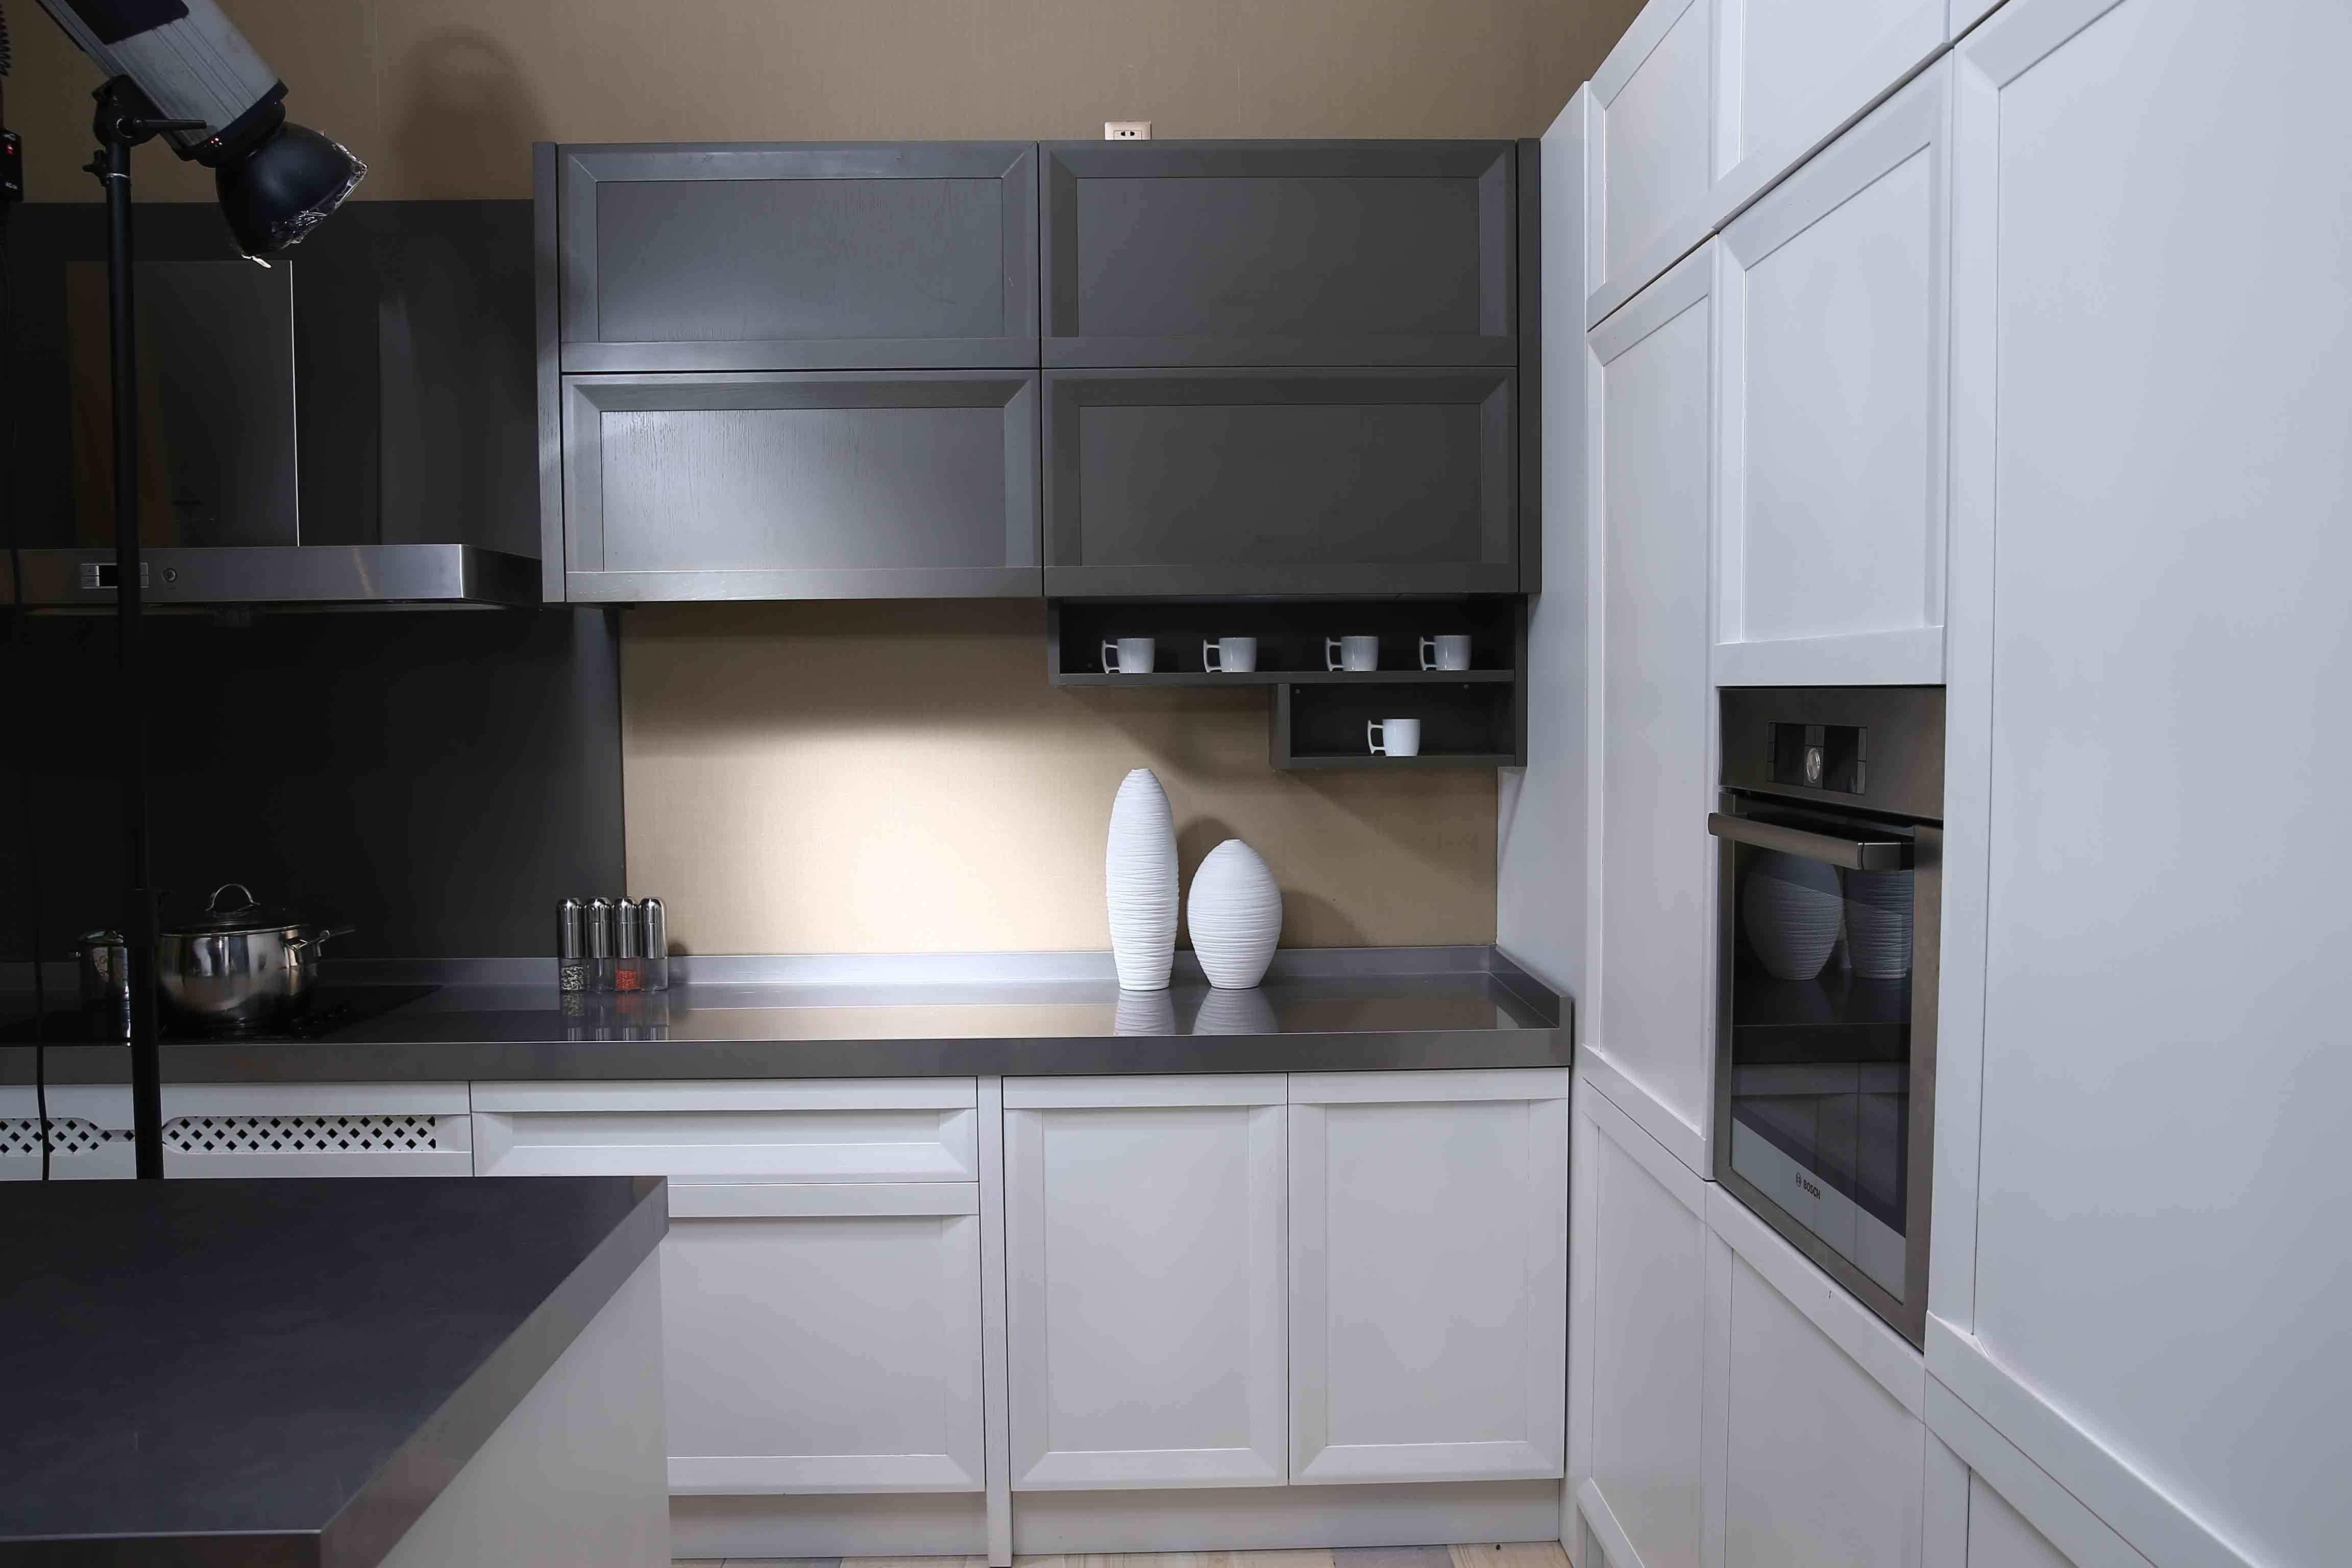 2015 [ Welbom ] New Style Modern White Kitchen Cabinet